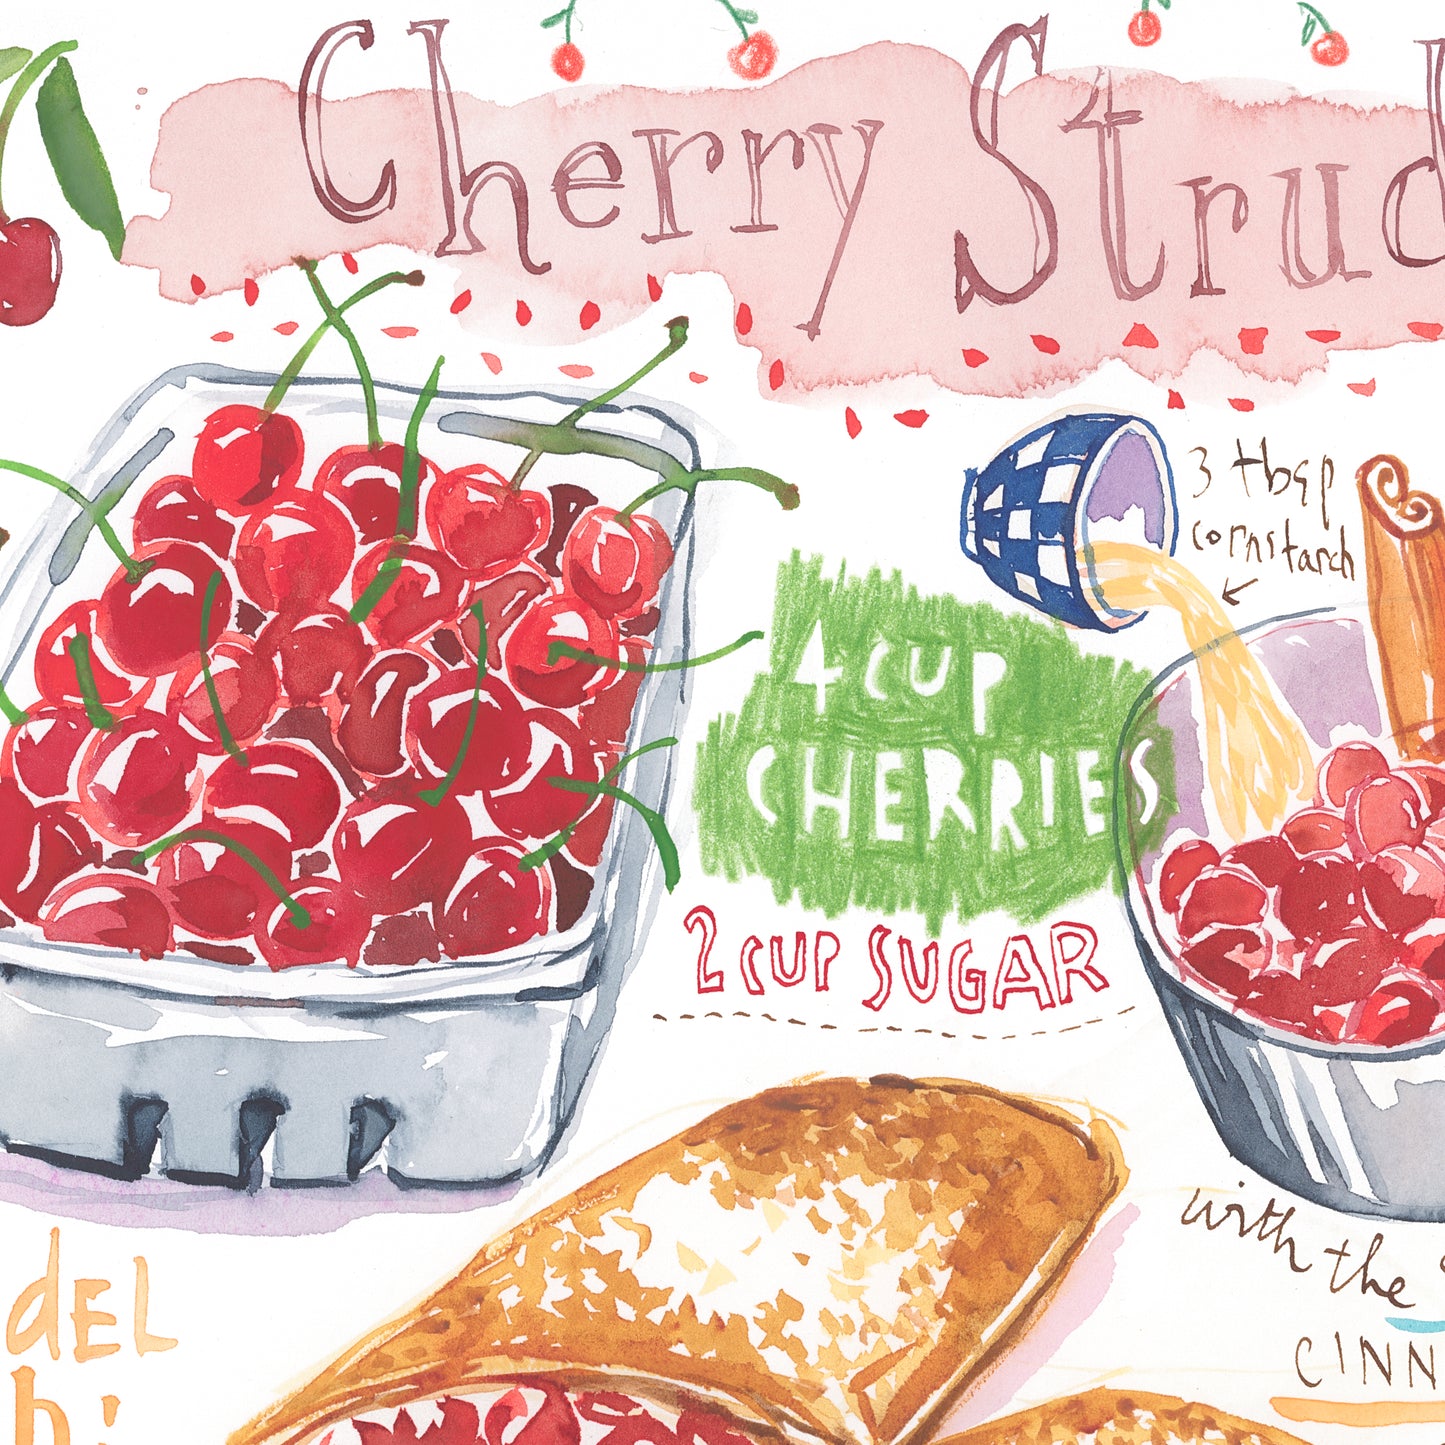 Cherry Strudel recipe